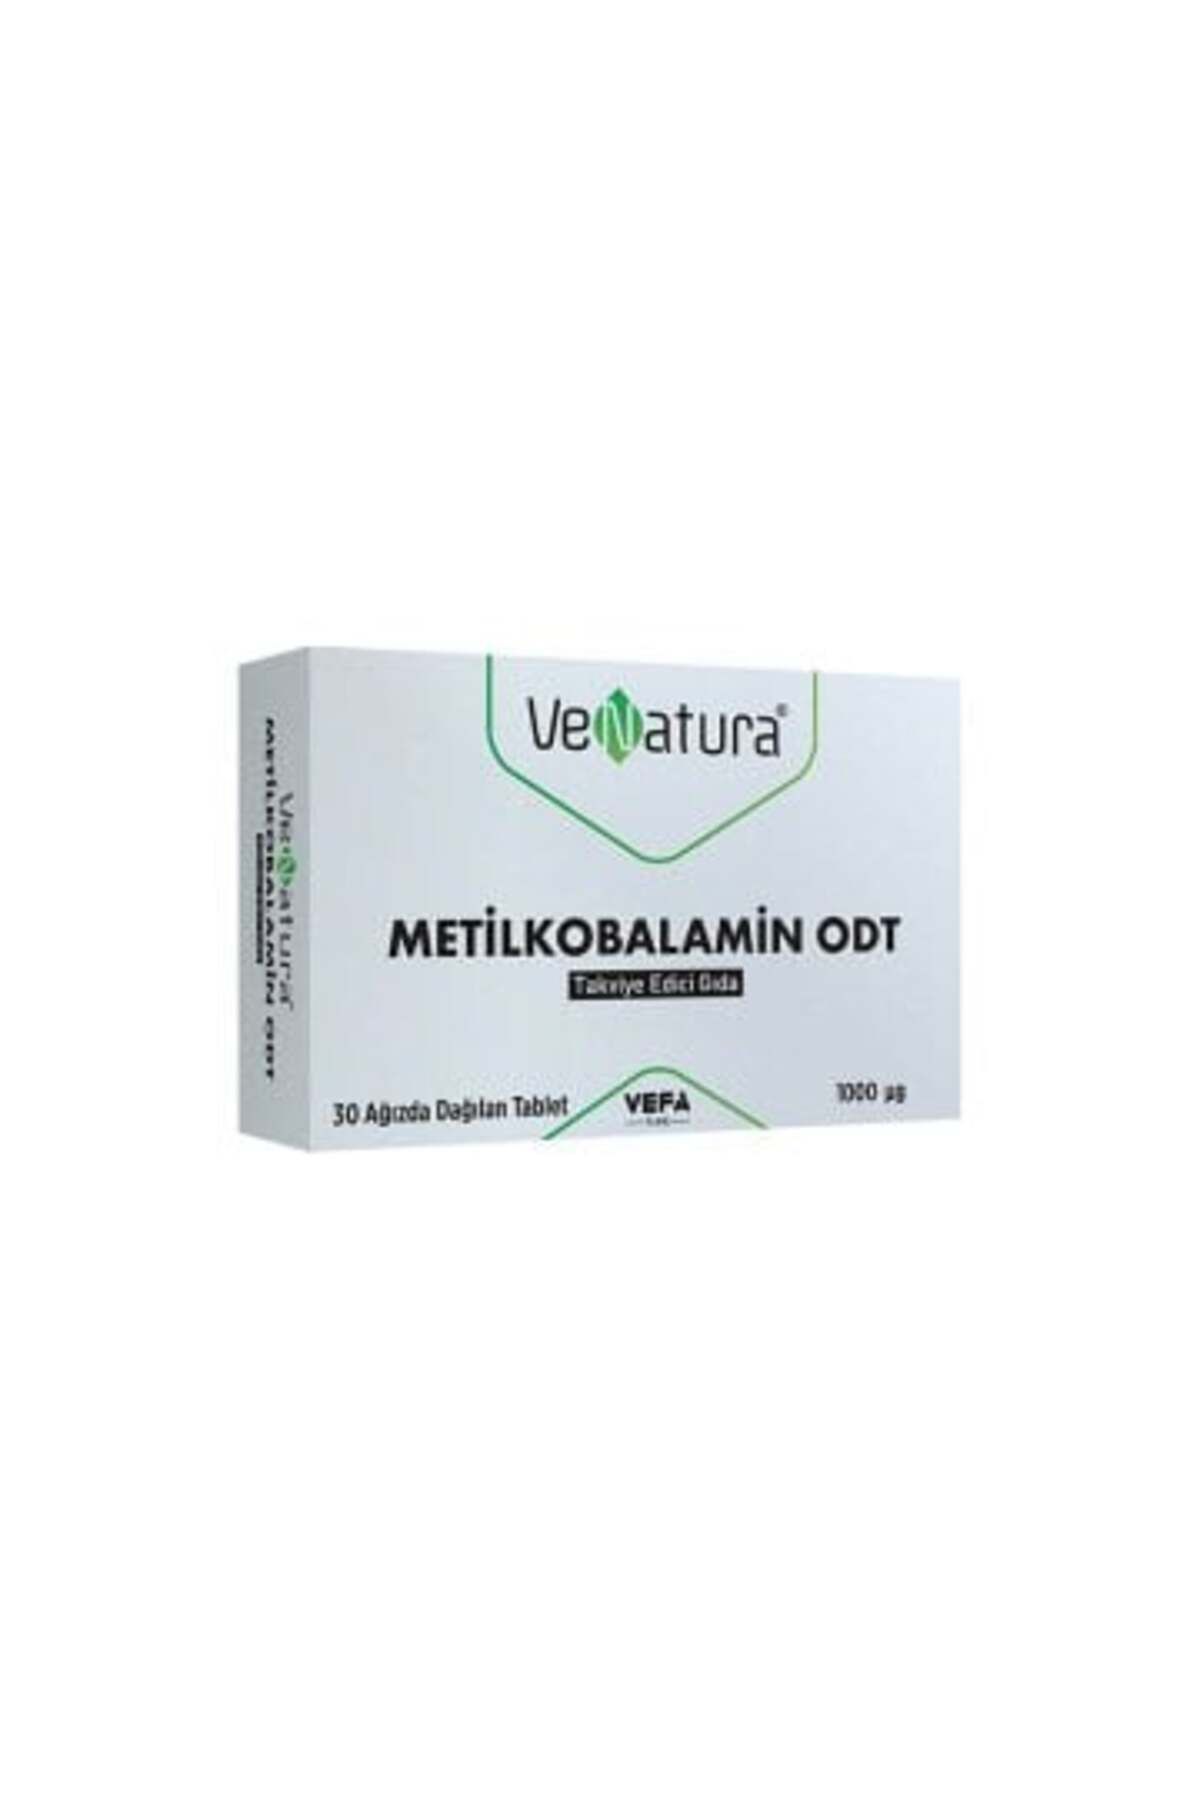 Venatura Metilkobalamin ODT Takviye Edici Gıda 30 Ağızda Dağılan Tablet ( 1 ADET )